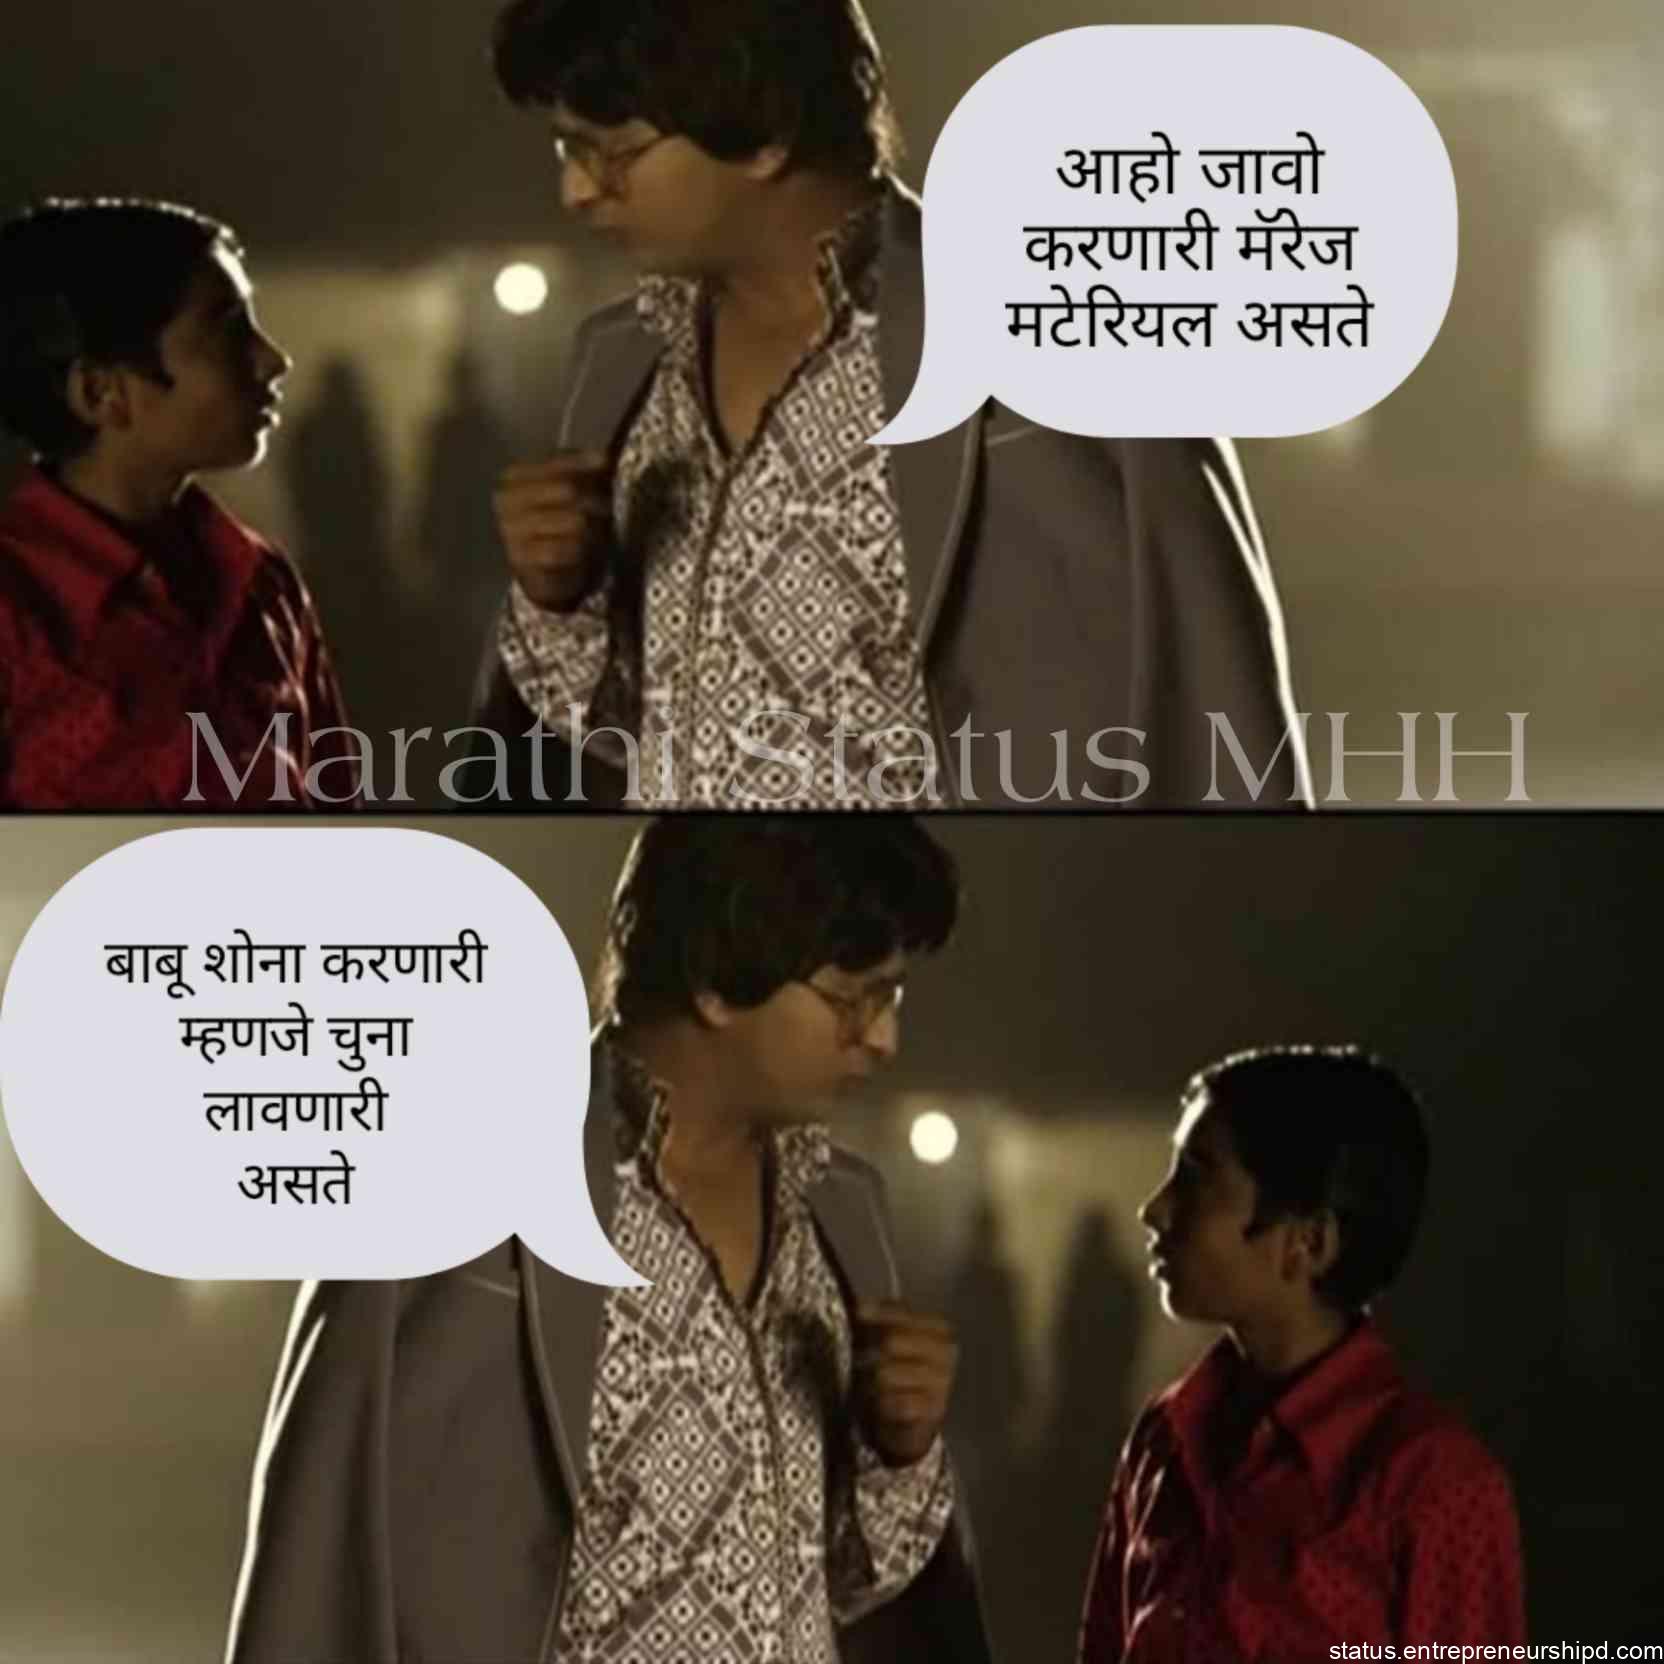 Marathi Memes | Funny Memes Marathi, Text on Images. - Marathi Status MHH